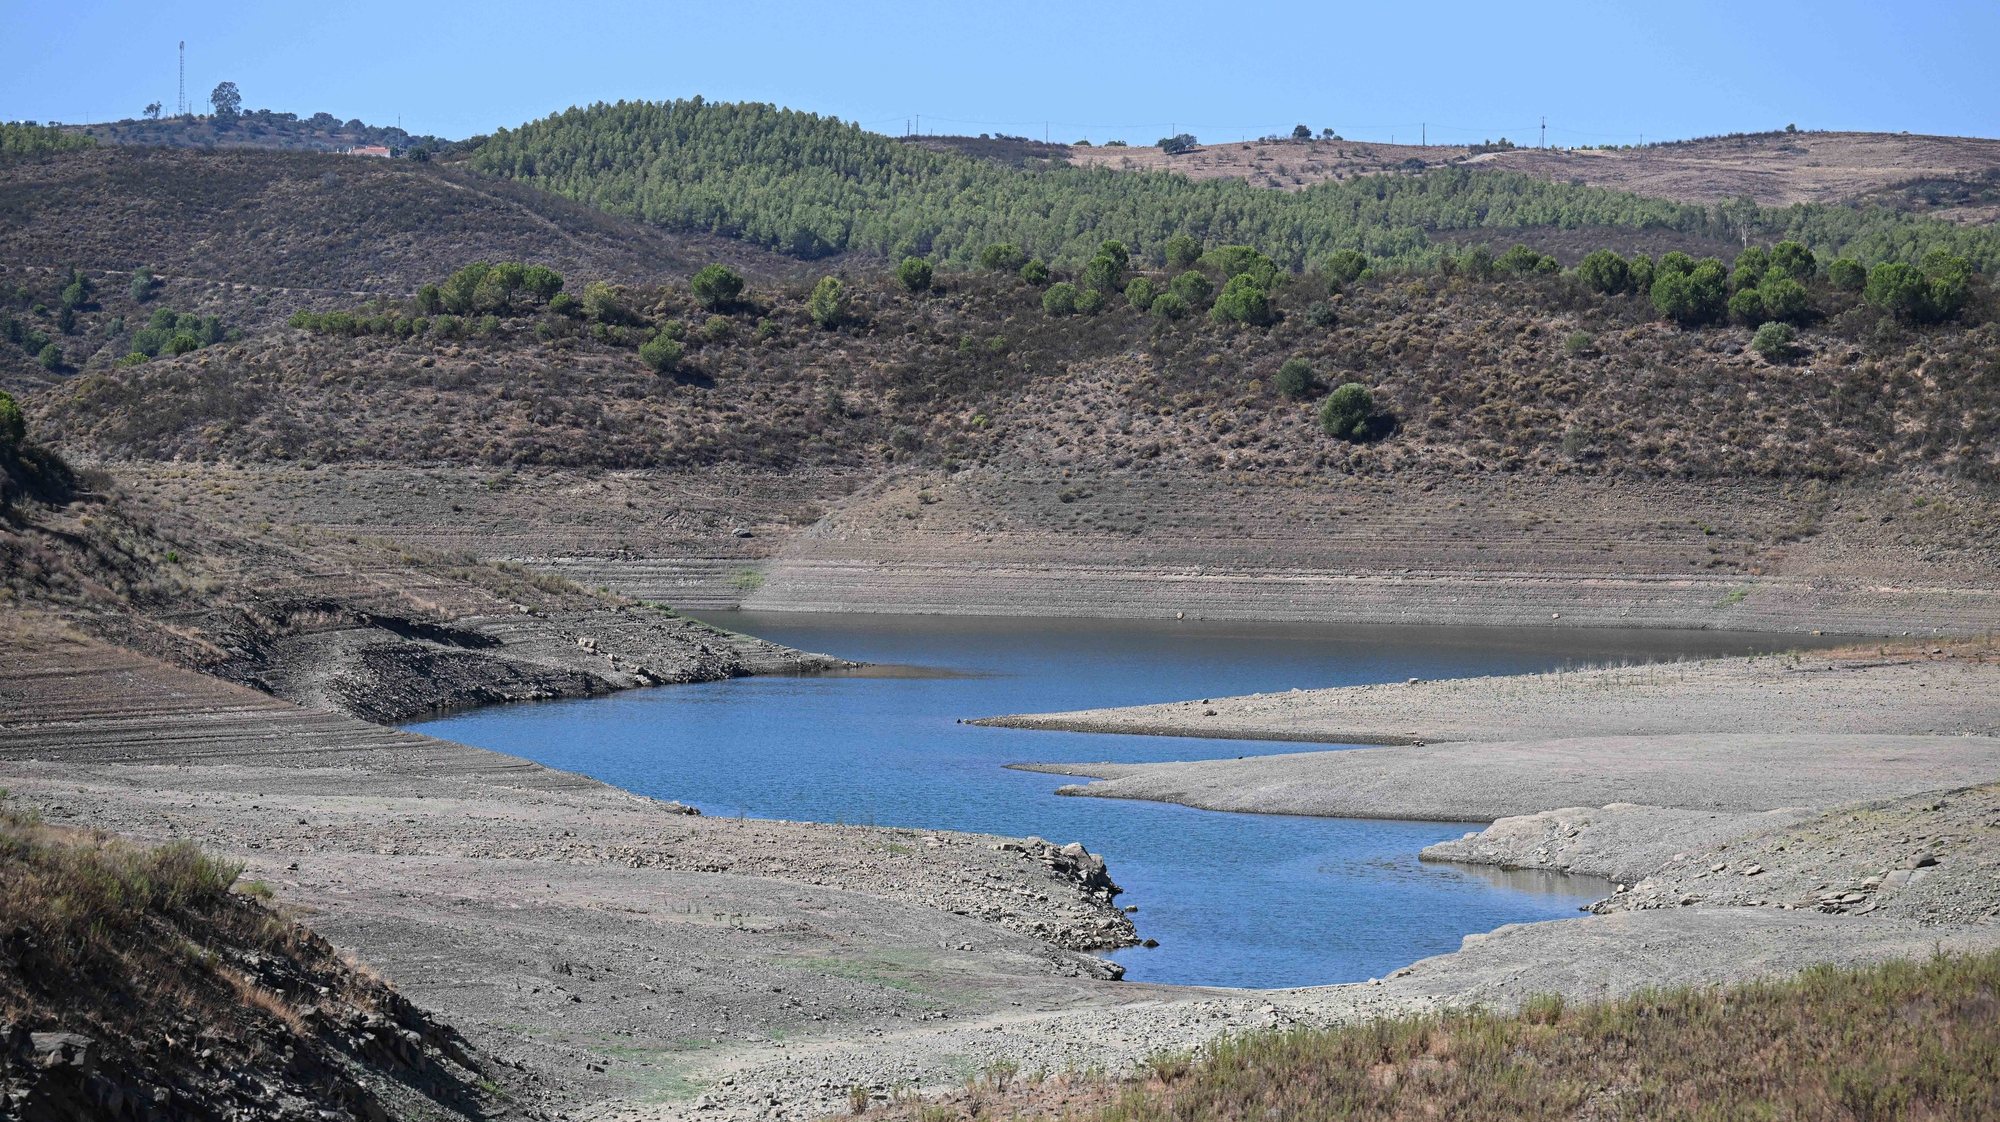 Barragem do Belhiche com pouca água devido às consequências da seca que afeta o baixo Guadiana, Castro Marim, 11 de agosto de 2022. (ACOMPANHA TEXTO DE 12-08-22) LUÍS FORRA/LUSA